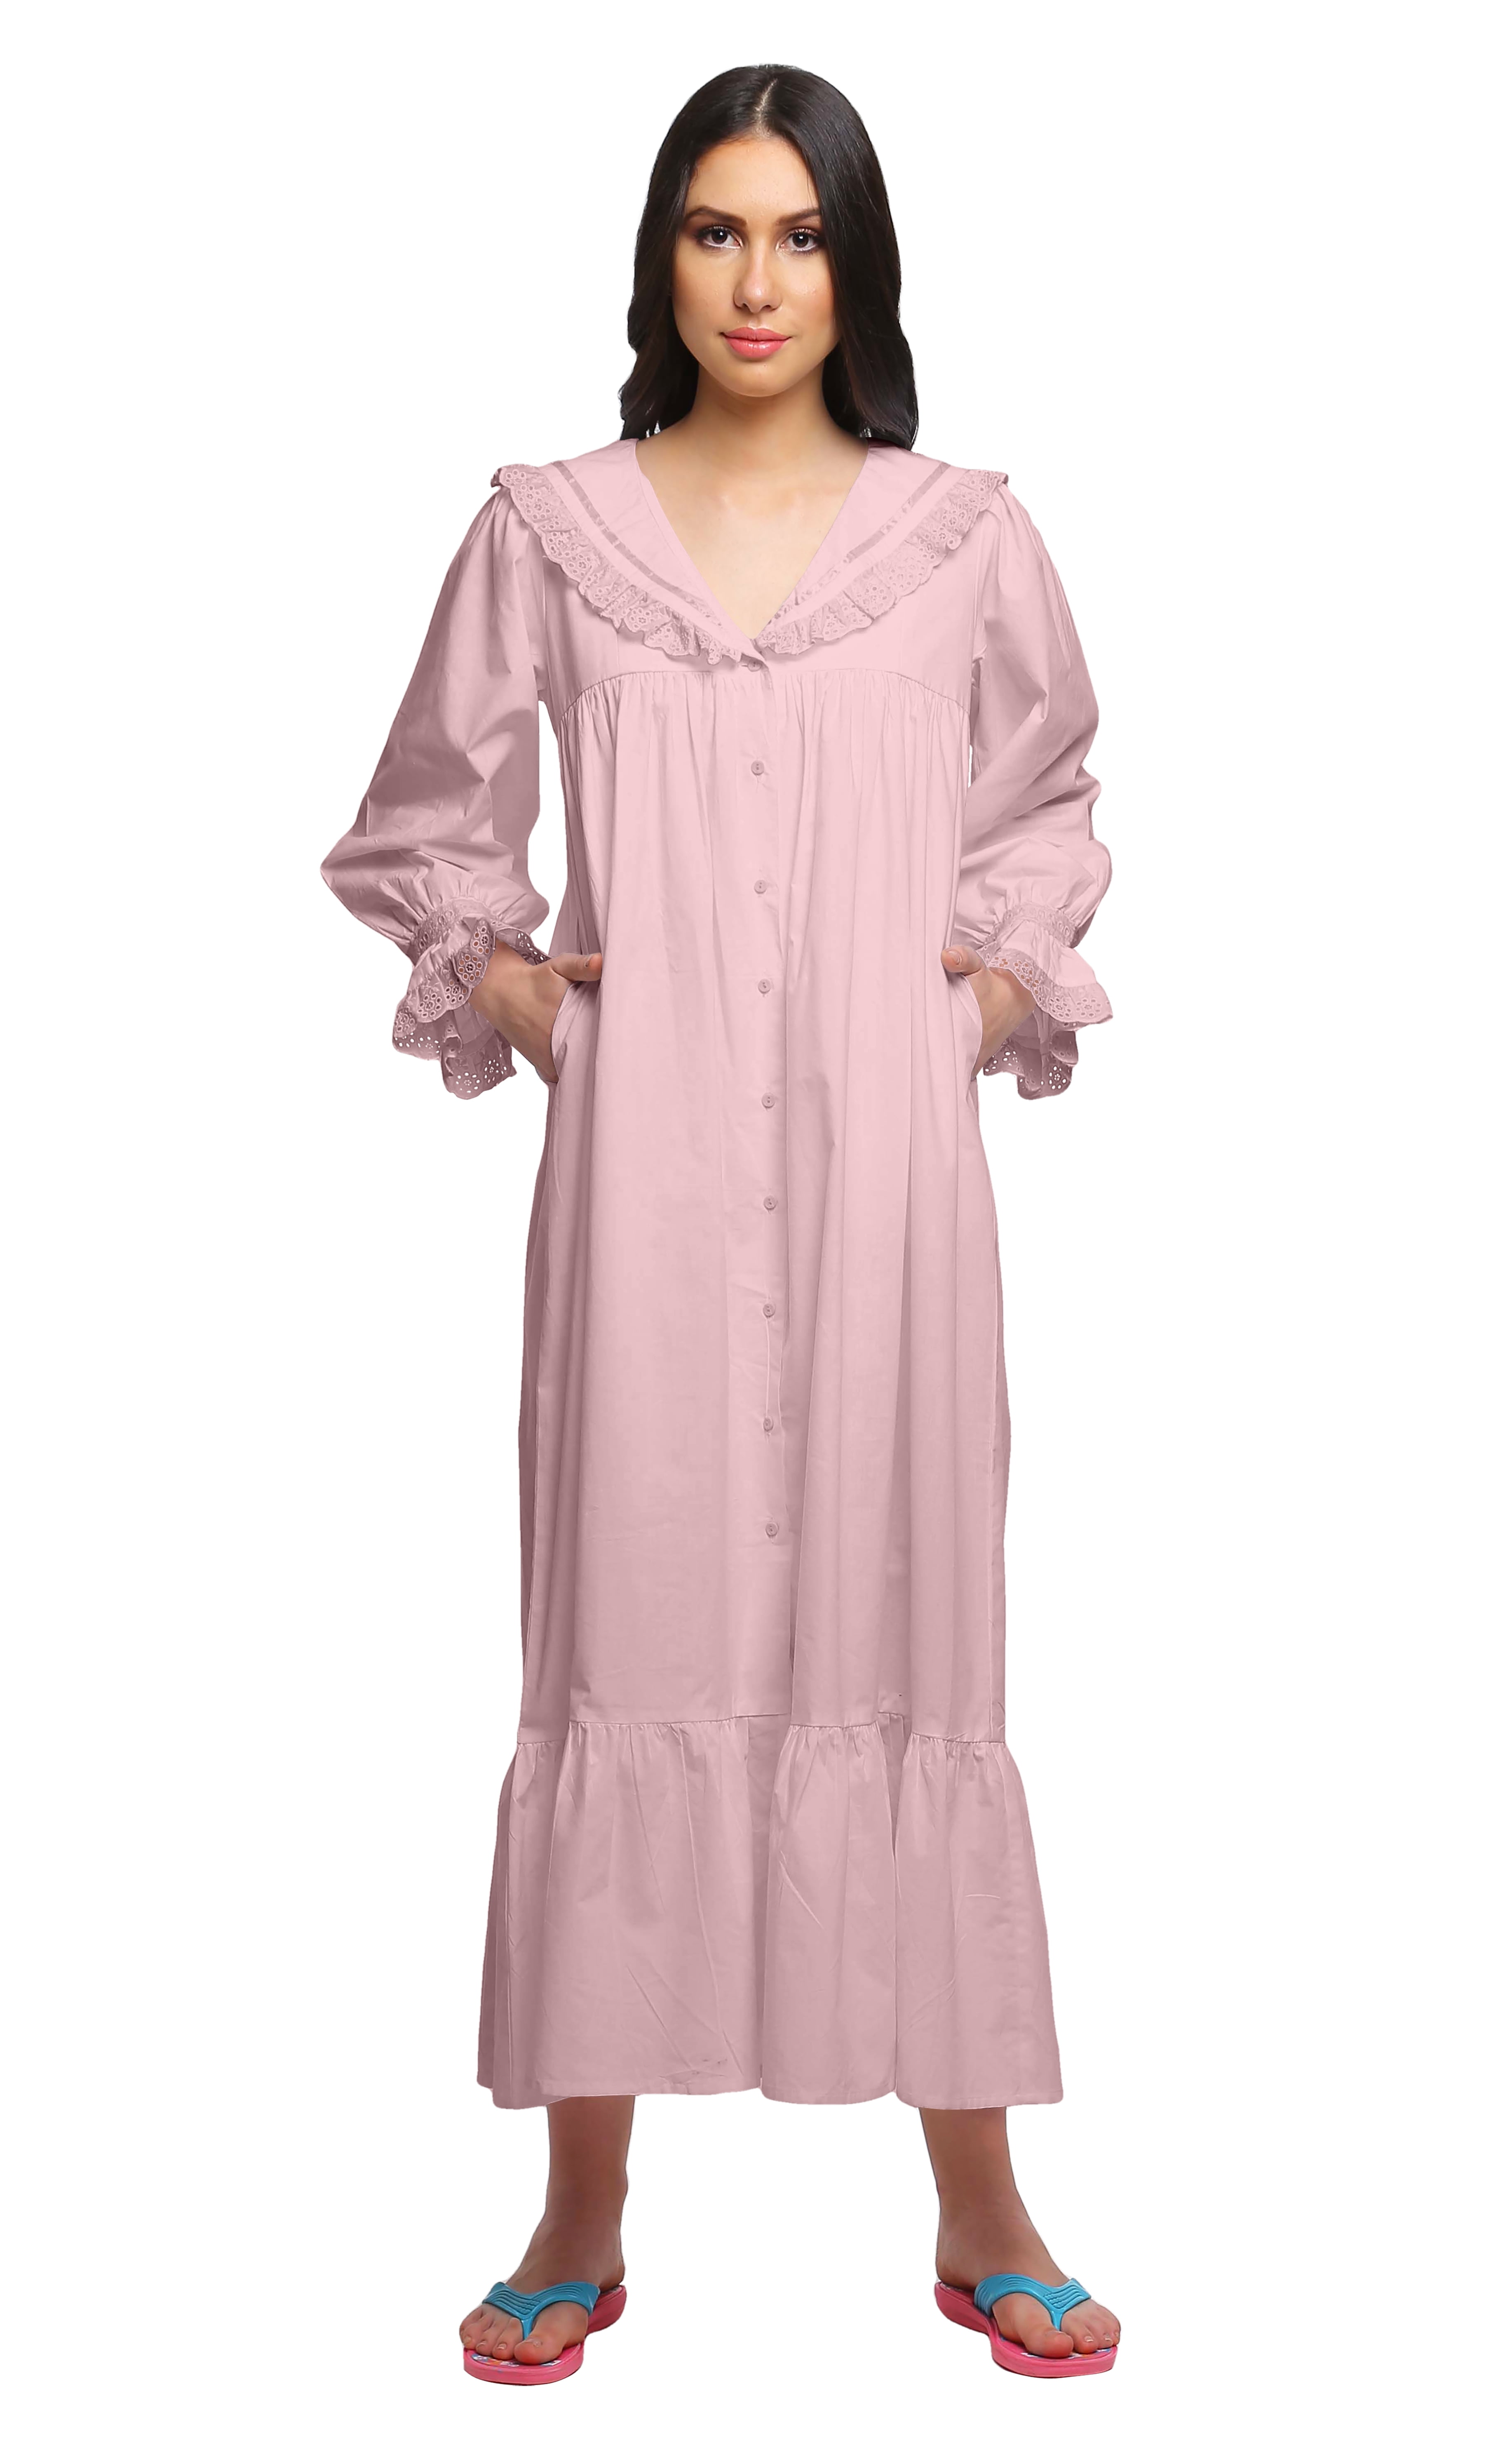 Moomaya Cotton Lace Neckline Sleepwear for Ladies Round Neck Womens Nightdress